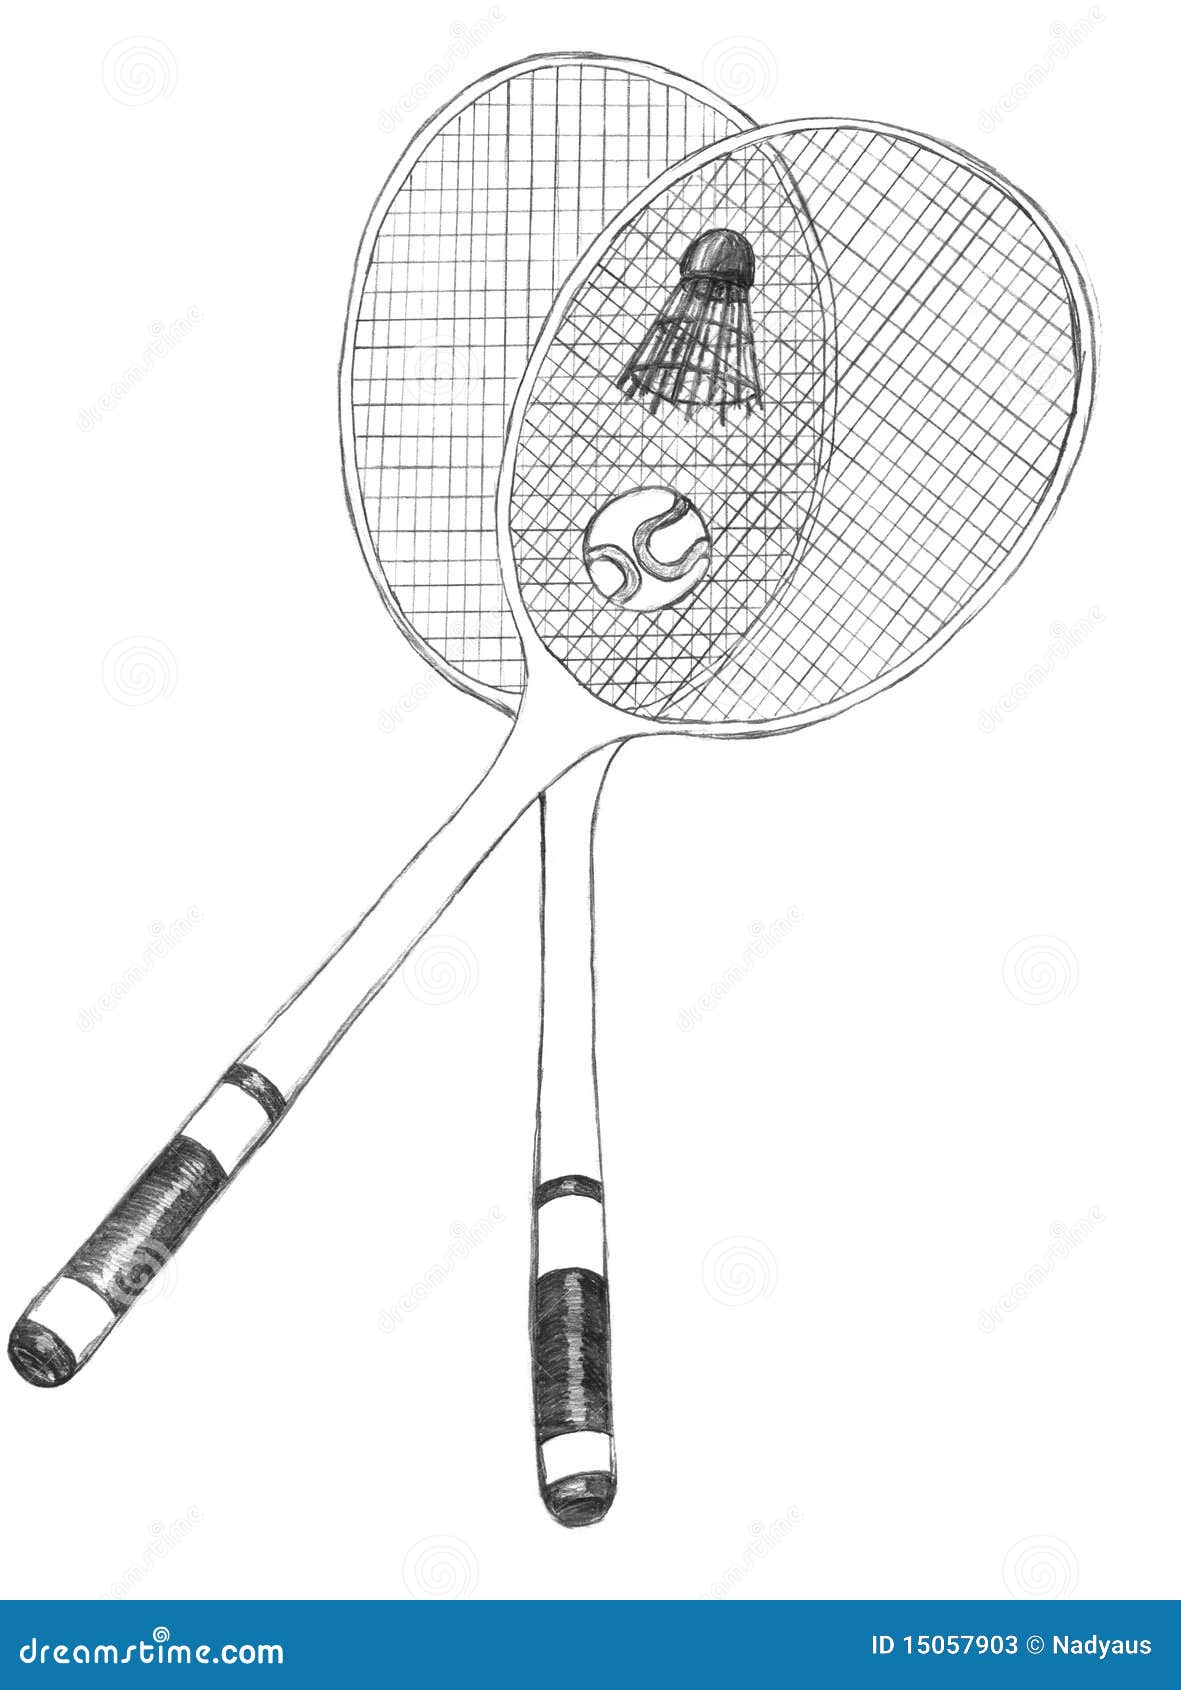 4,572 Badminton Sketch Images, Stock Photos & Vectors | Shutterstock